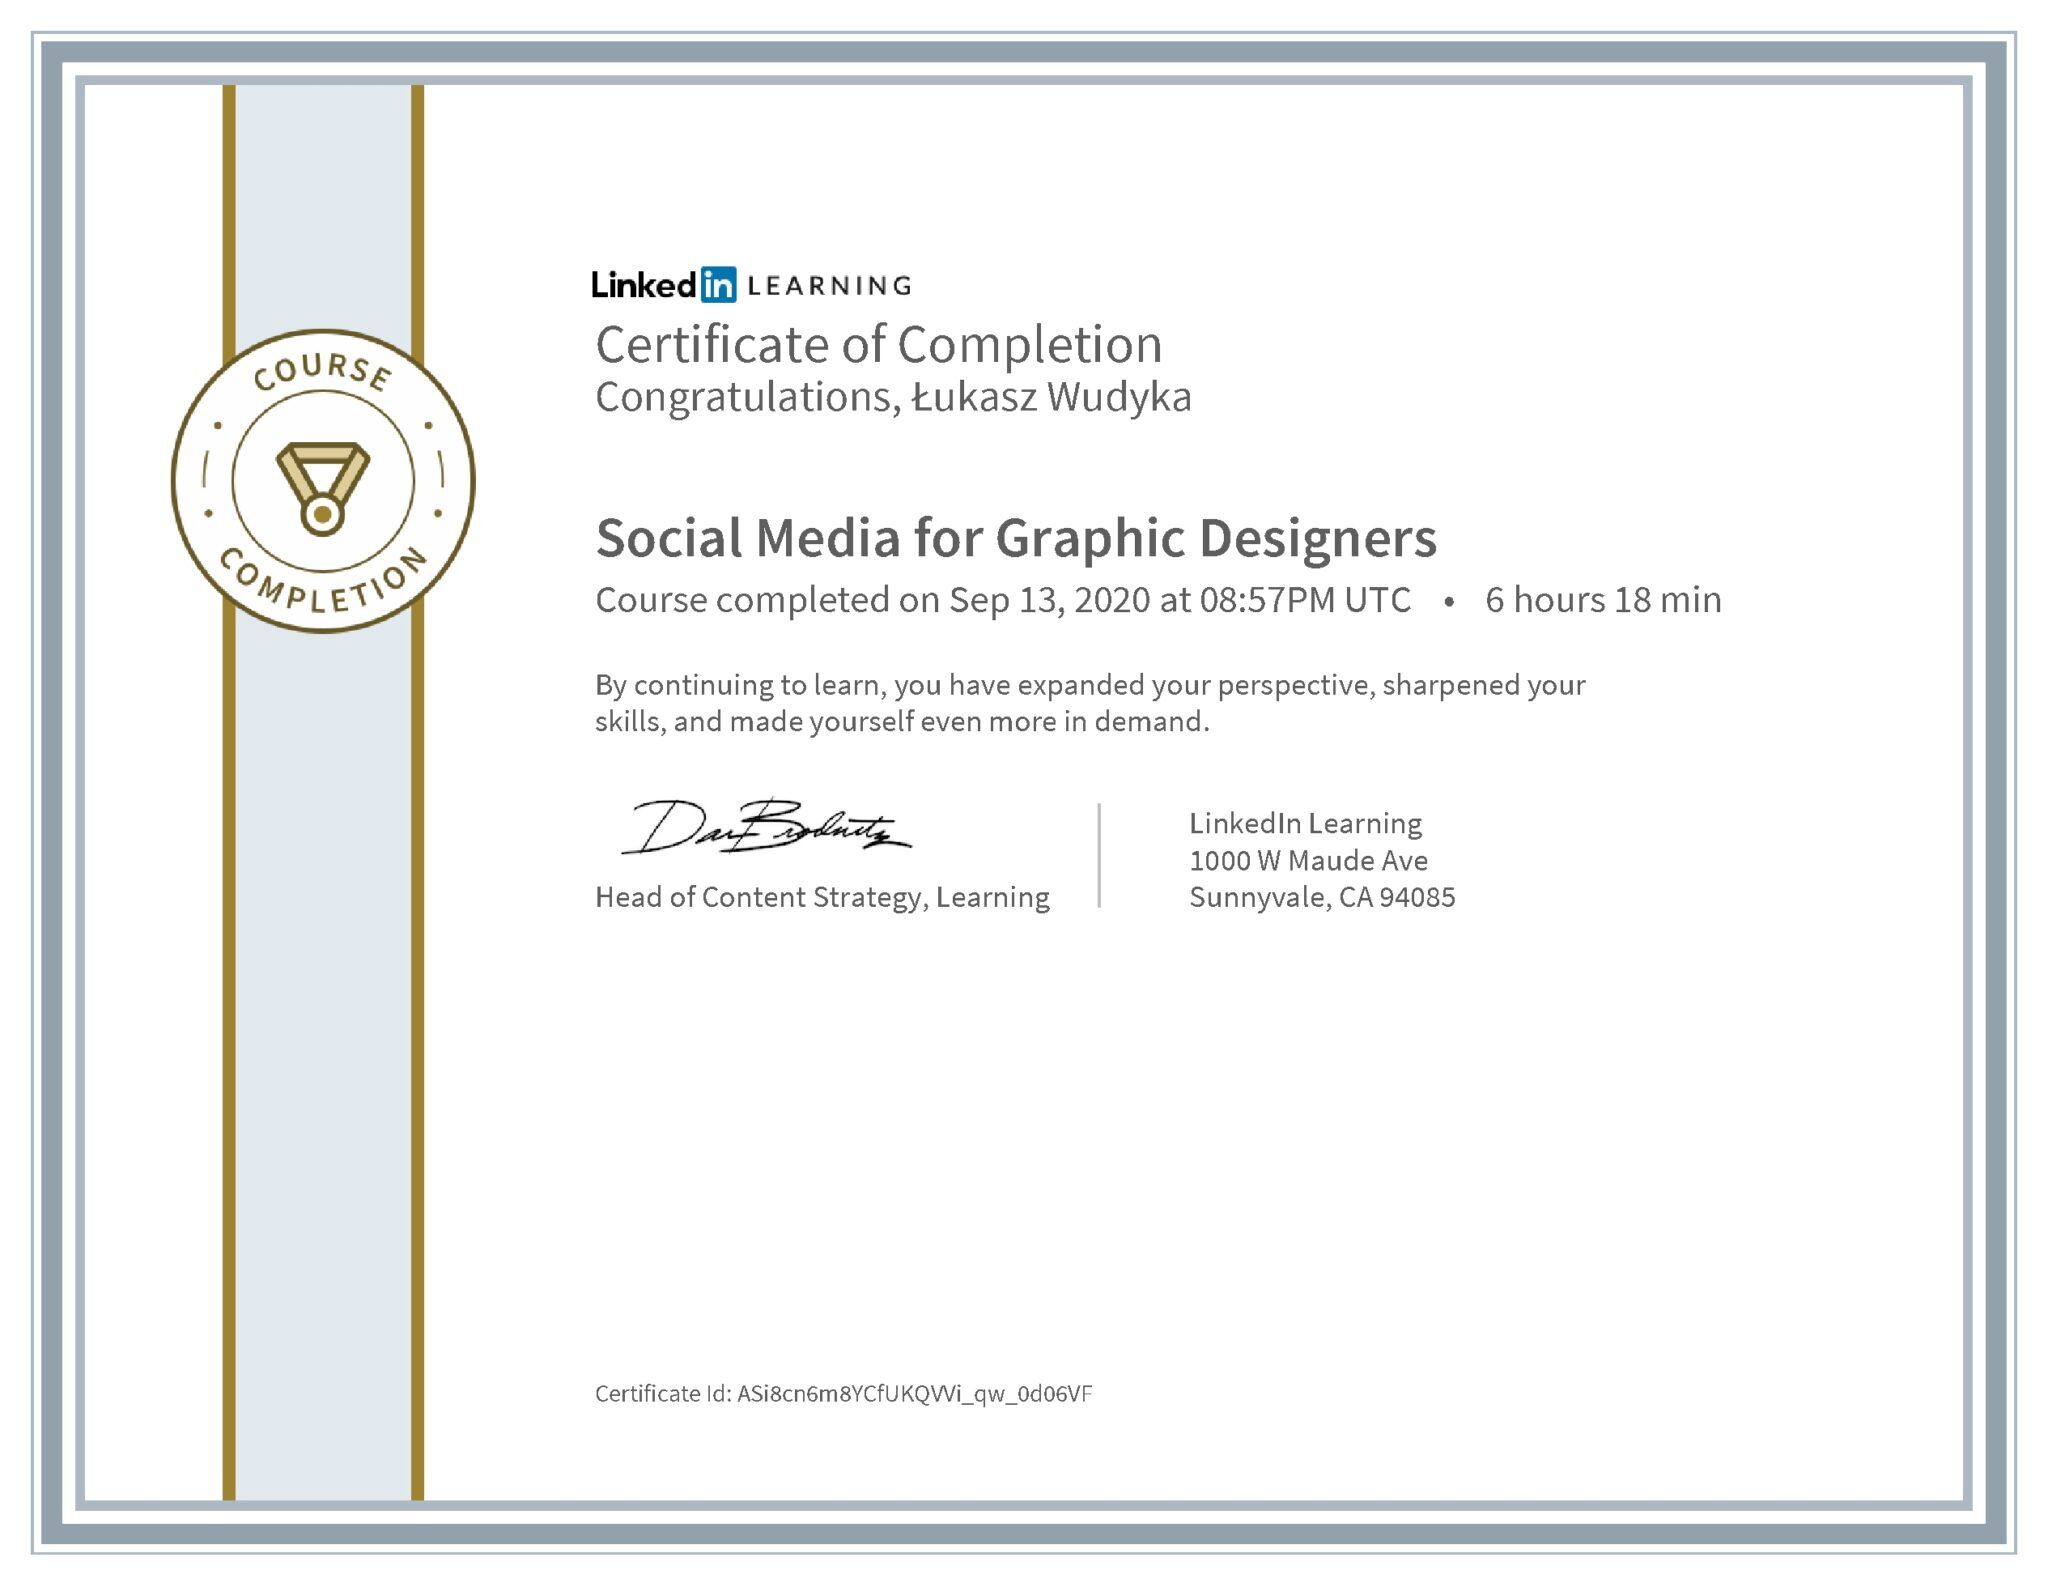 Łukasz Wudyka certyfikat LinkedIn Social Media for Graphic Designers